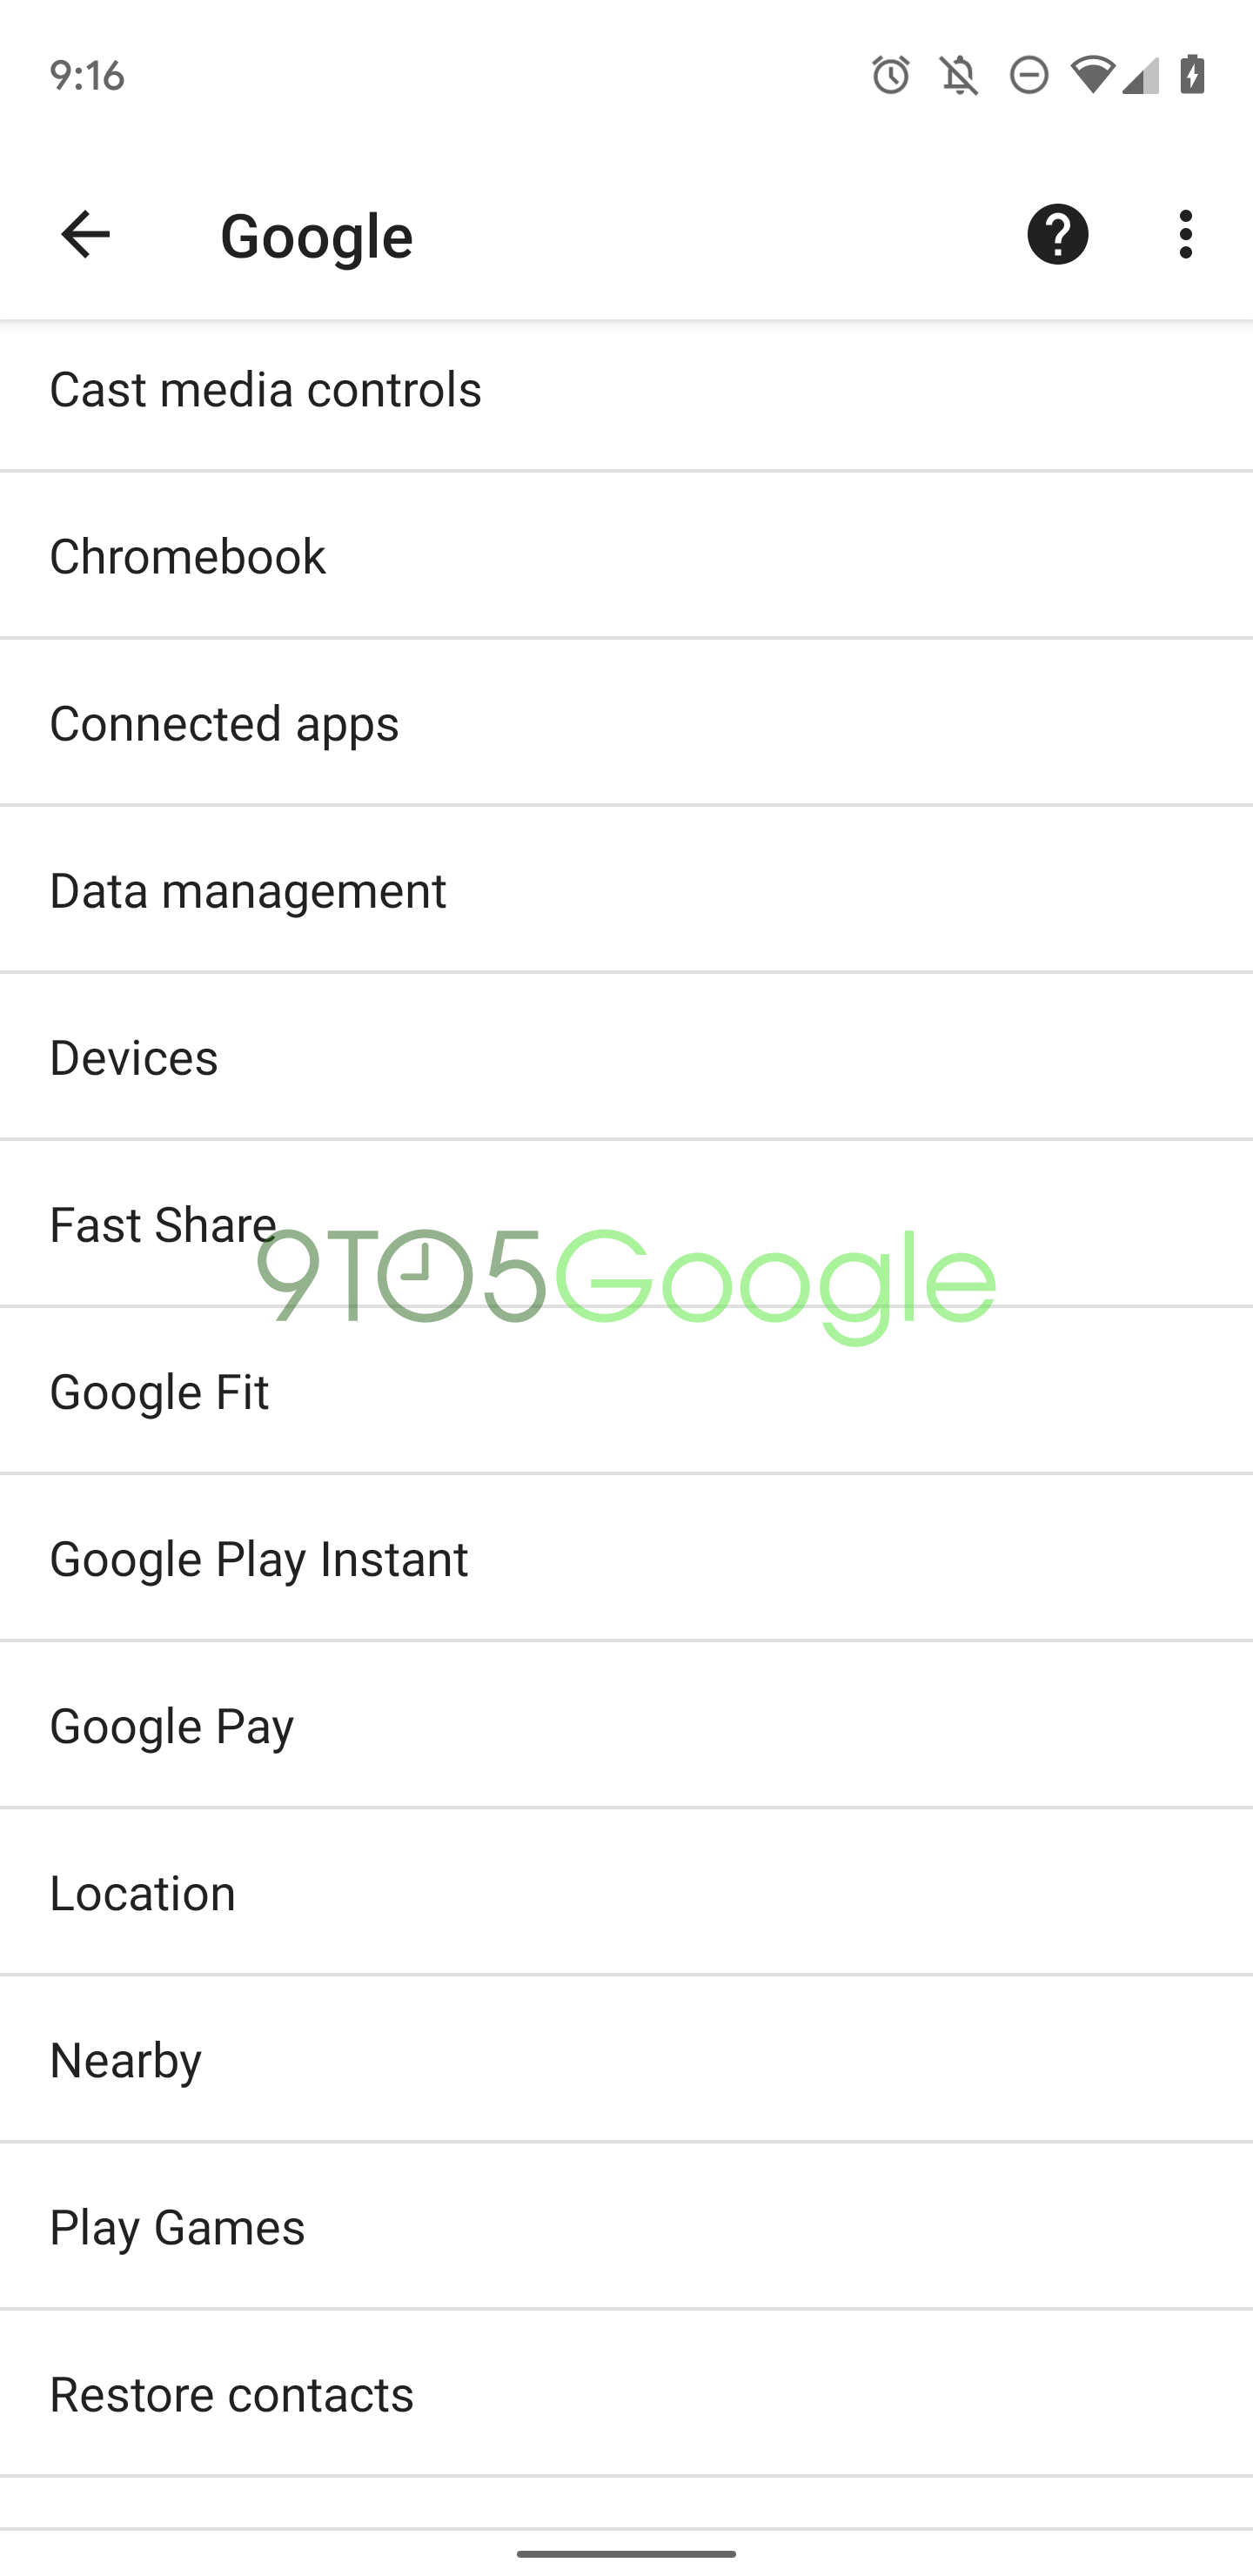 อะไรคือ Fast Share ? ทำความรู้จักกับฟีเจอร์การแชร์ไฟล์รูปแบบใหม่ที่ Google นำมาใช้แทน Android Beam